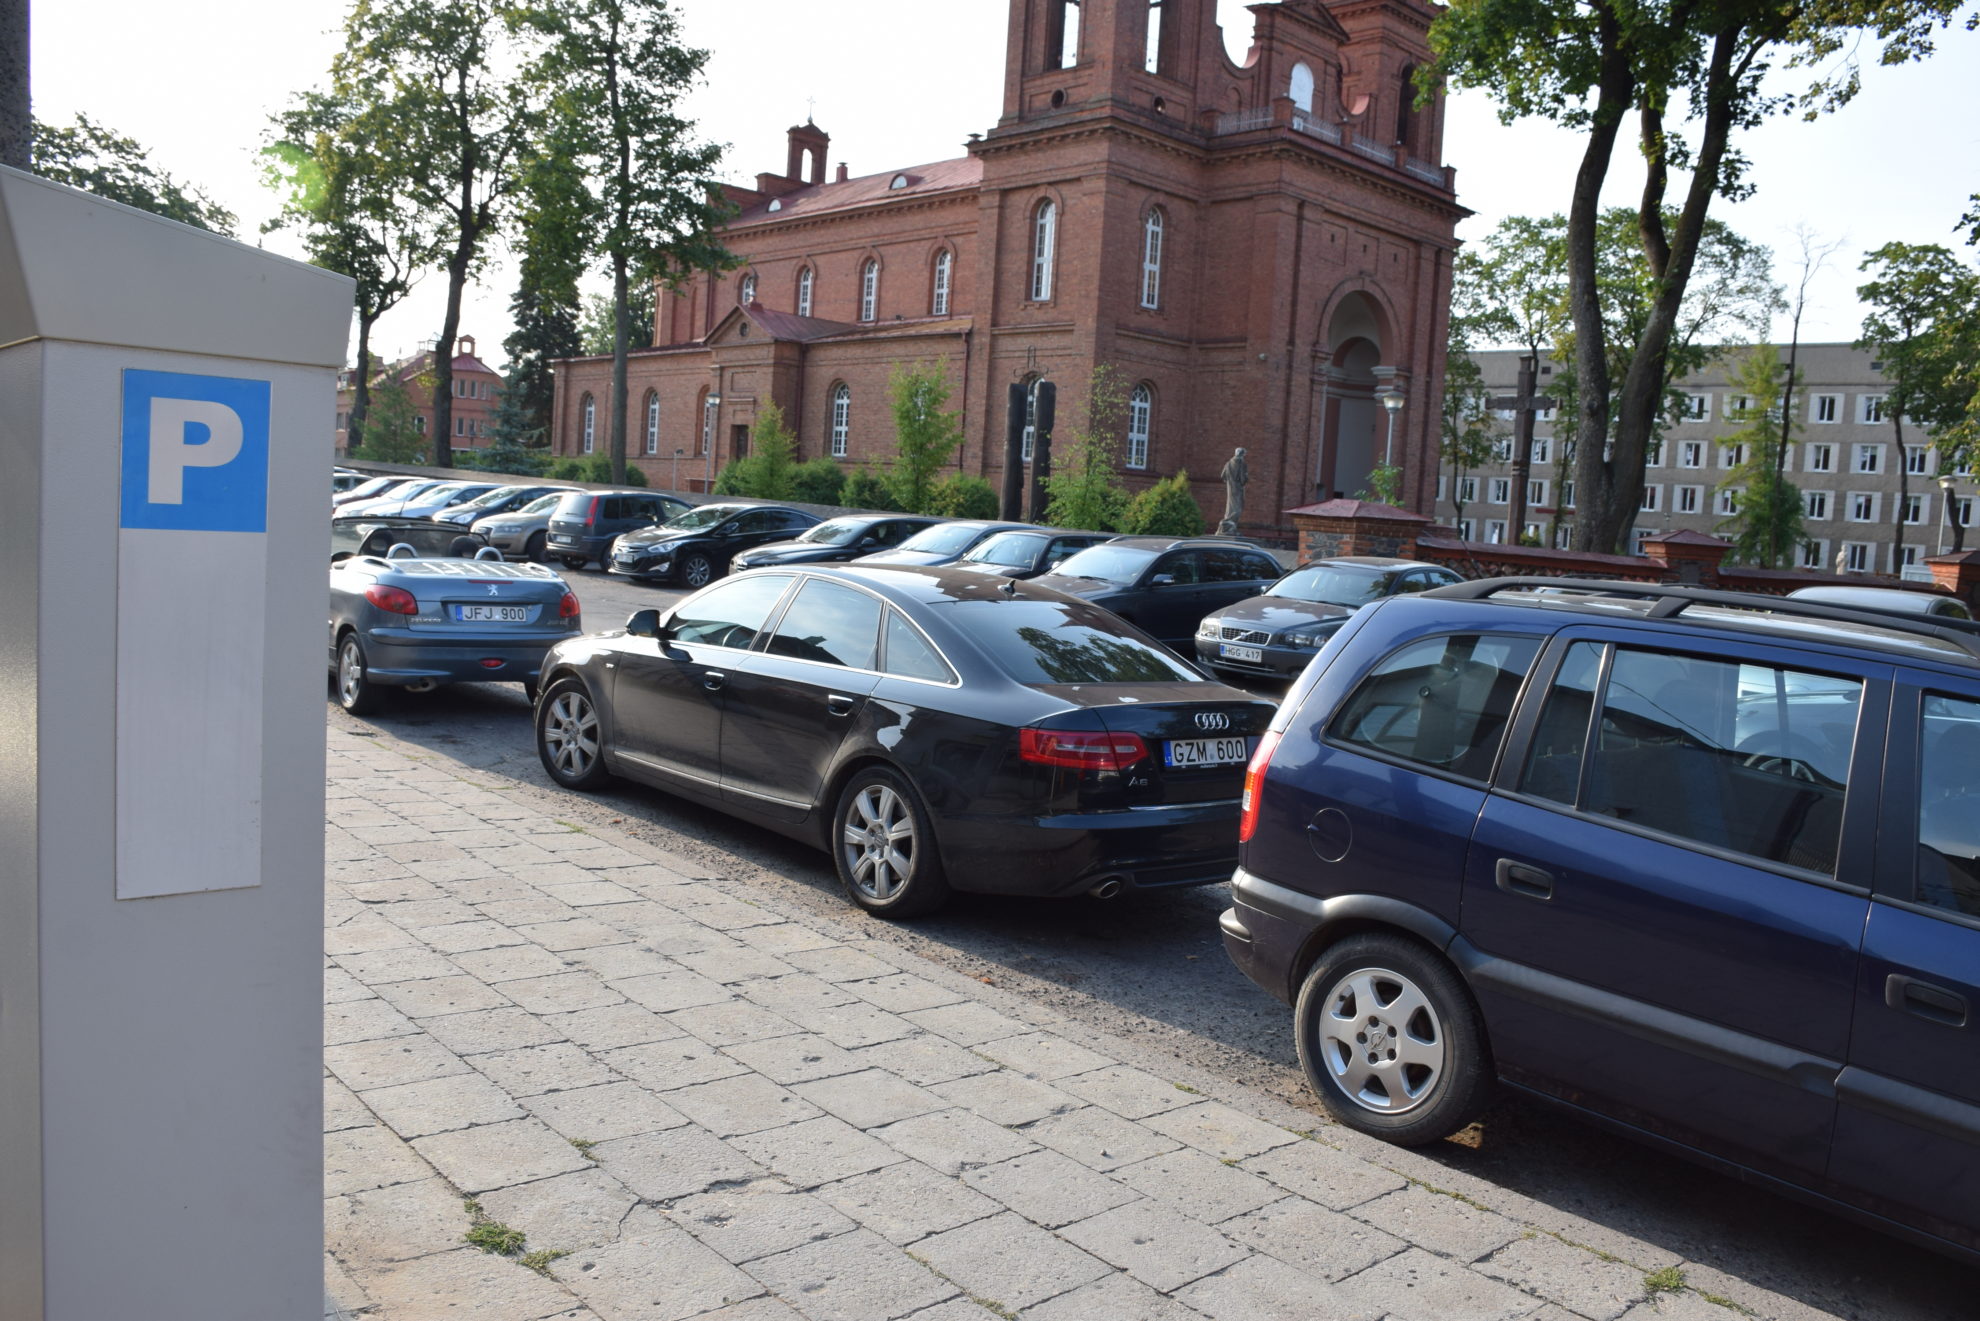 Nuo rugsėjo 1 d. Panevėžyje pradedama rinkti rinkliava už automobilių stovėjimą naujose vietose.